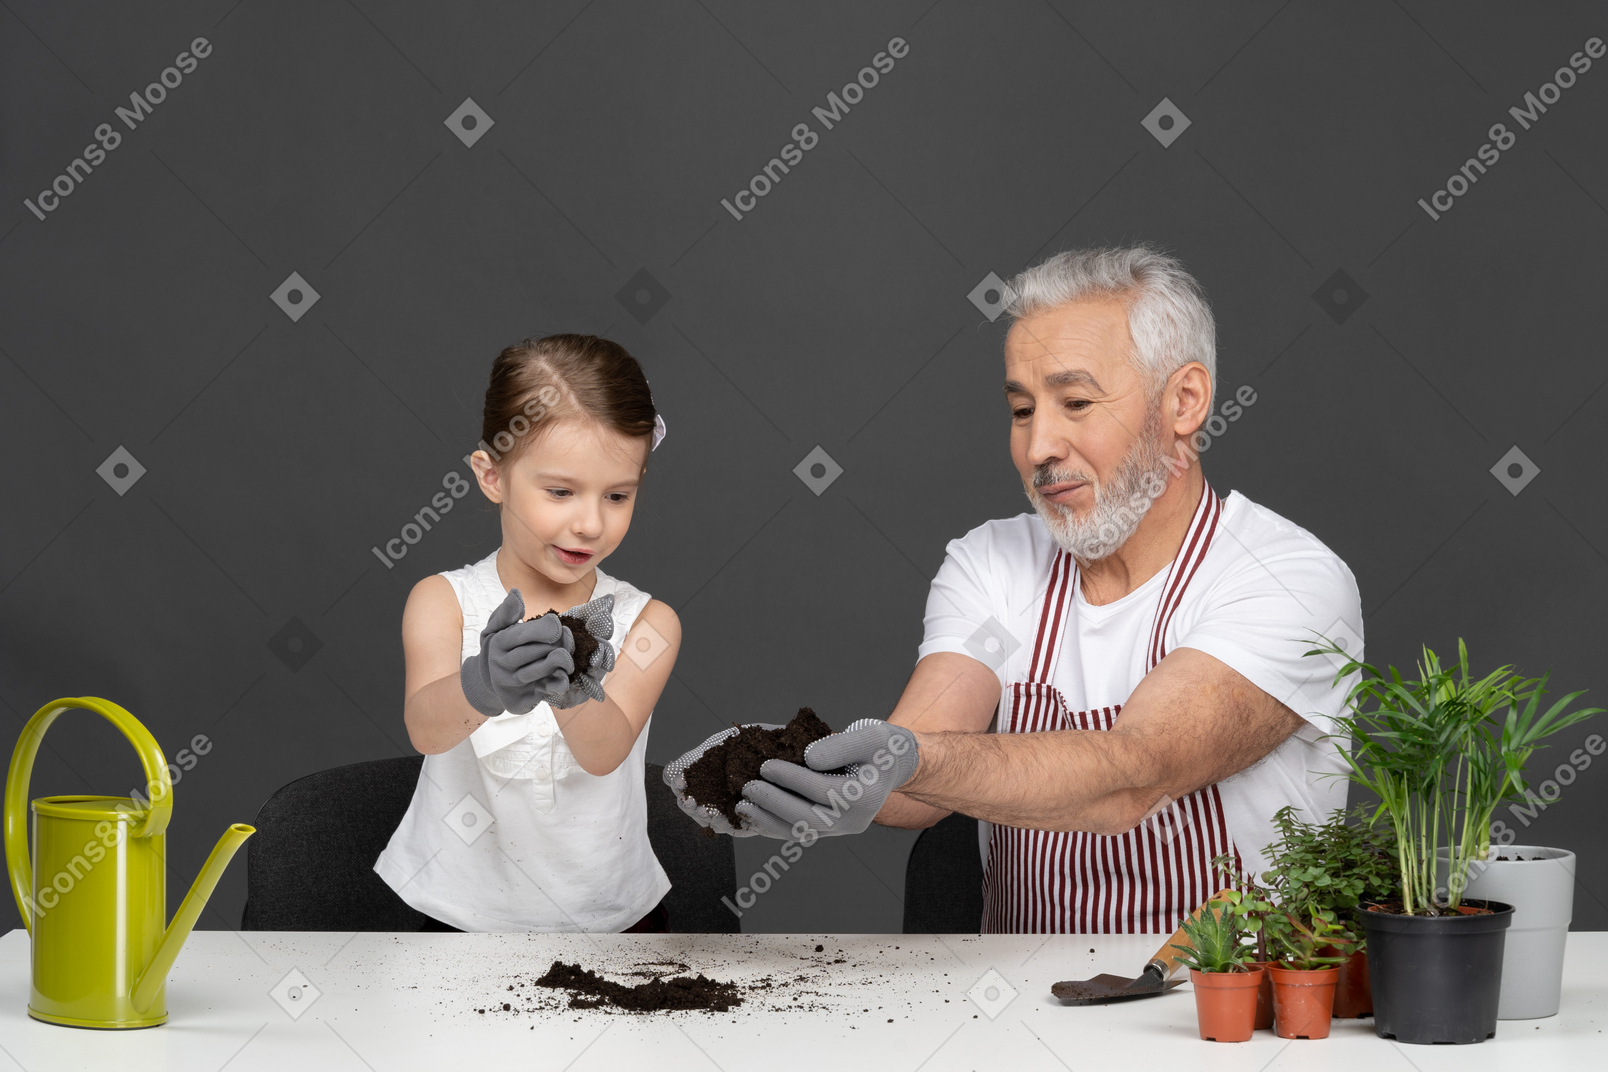 Little girl and mature man gardening